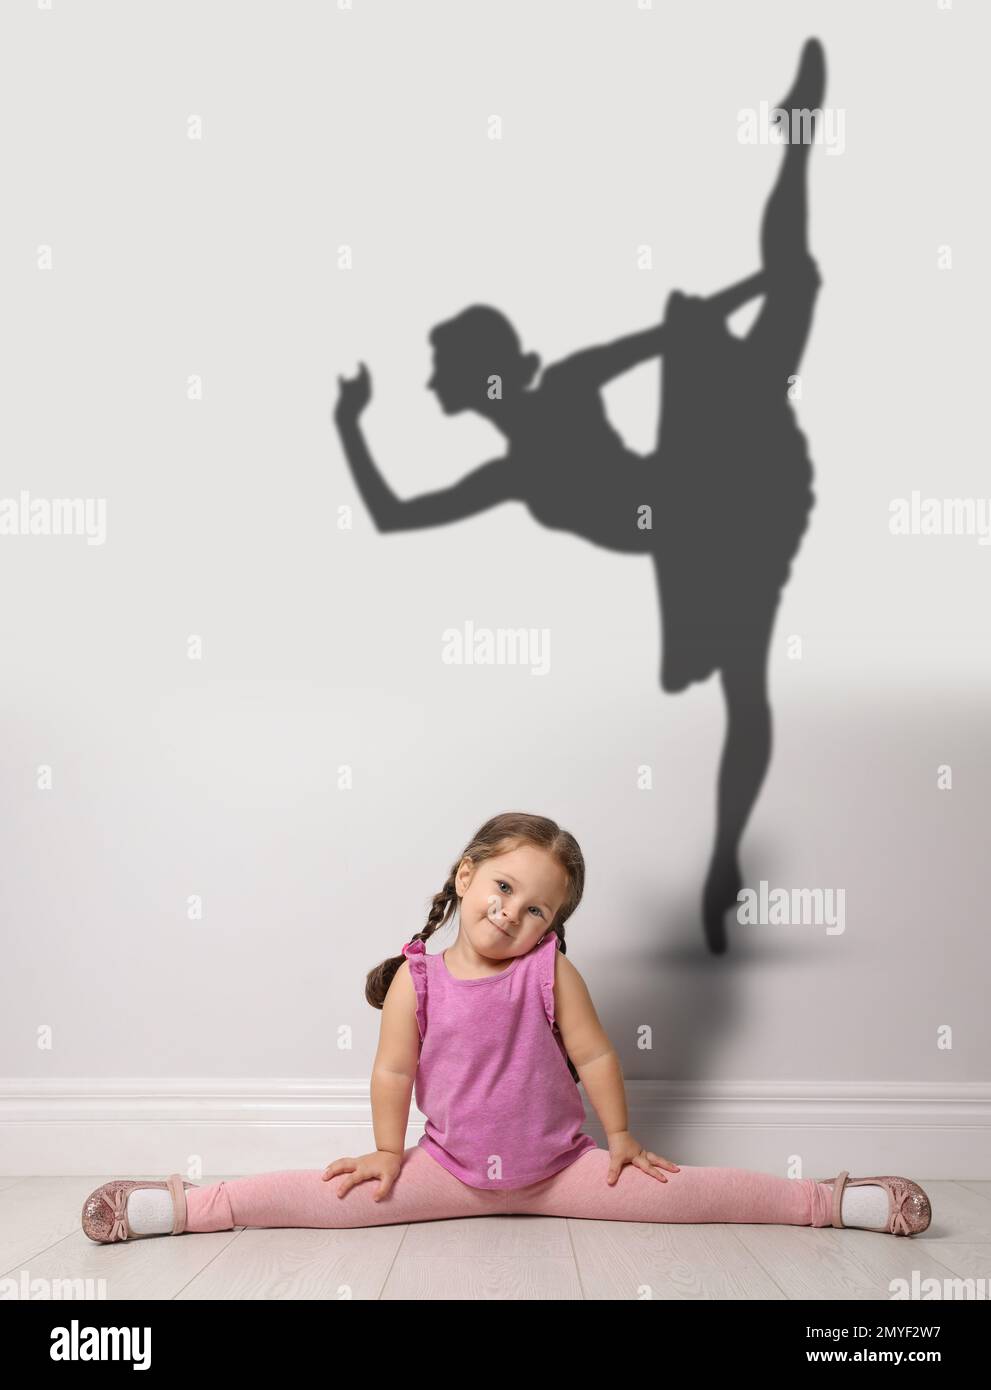 Petite fille mignonne rêvant d'être danseuse de ballet. Silhouette de femme derrière le dos de l'enfant Banque D'Images